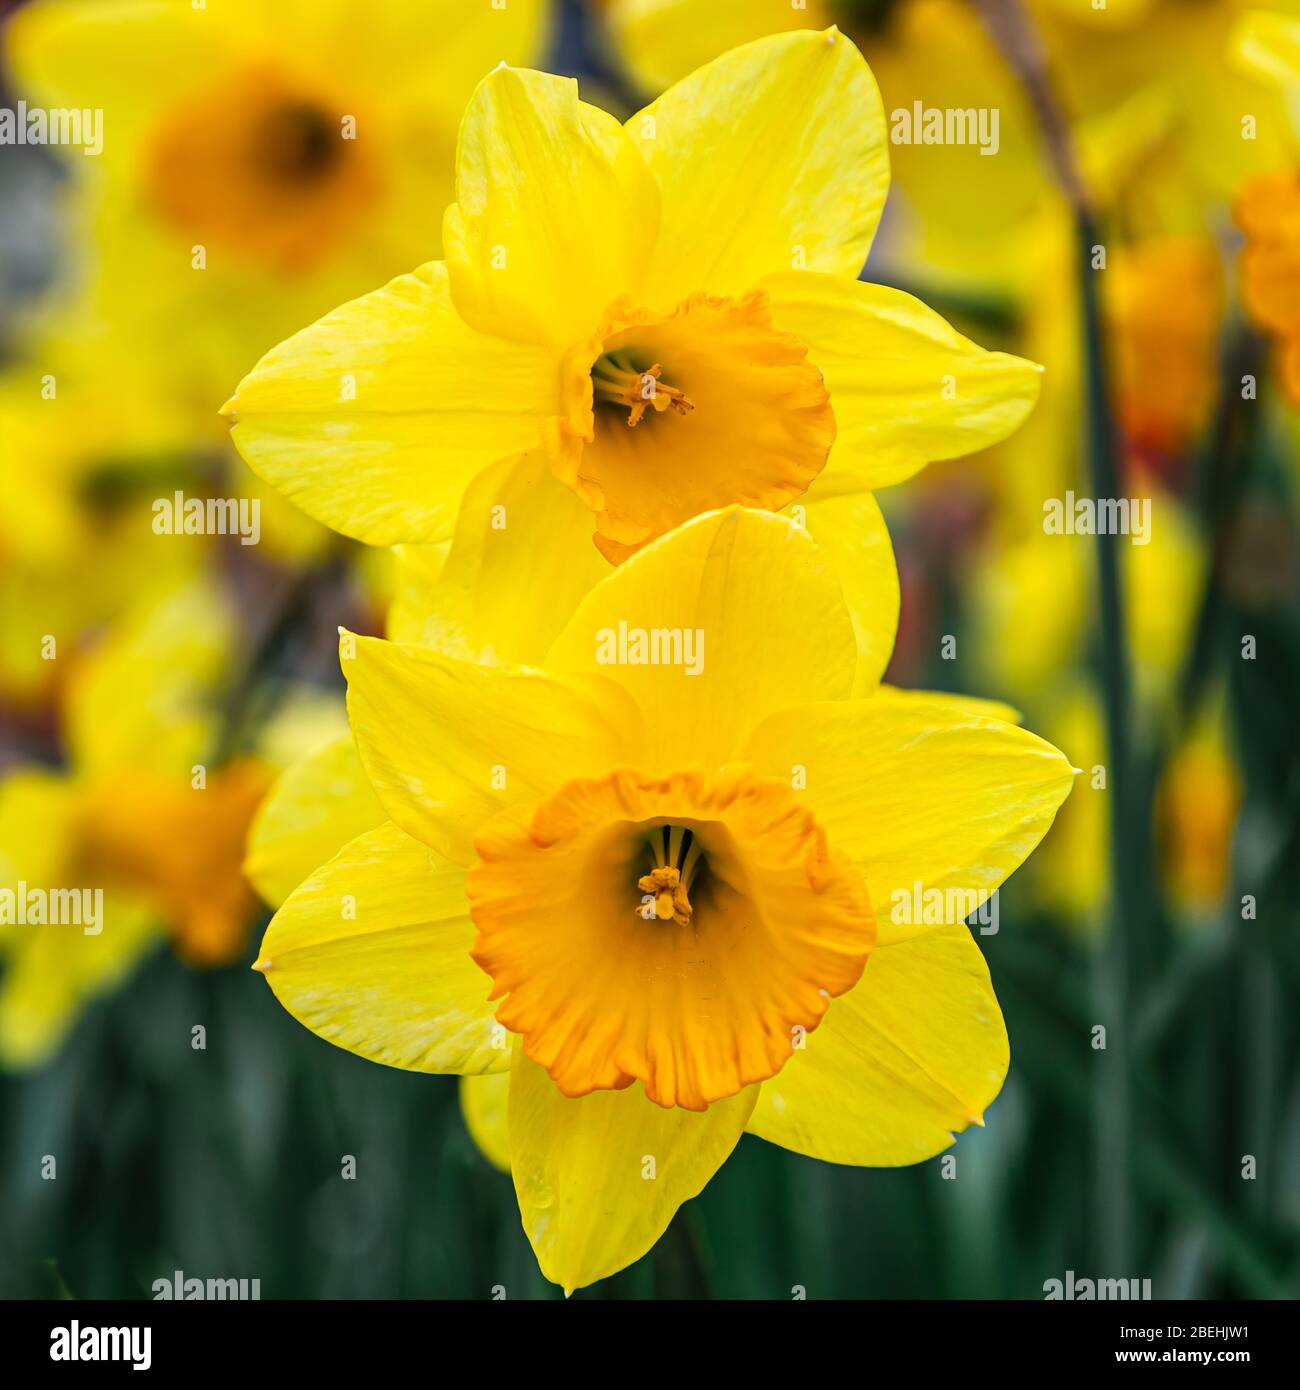 Gros plan sur deux jonquilles jaunes (genre Narcisse), plantes de la famille des maryllis. Banque D'Images